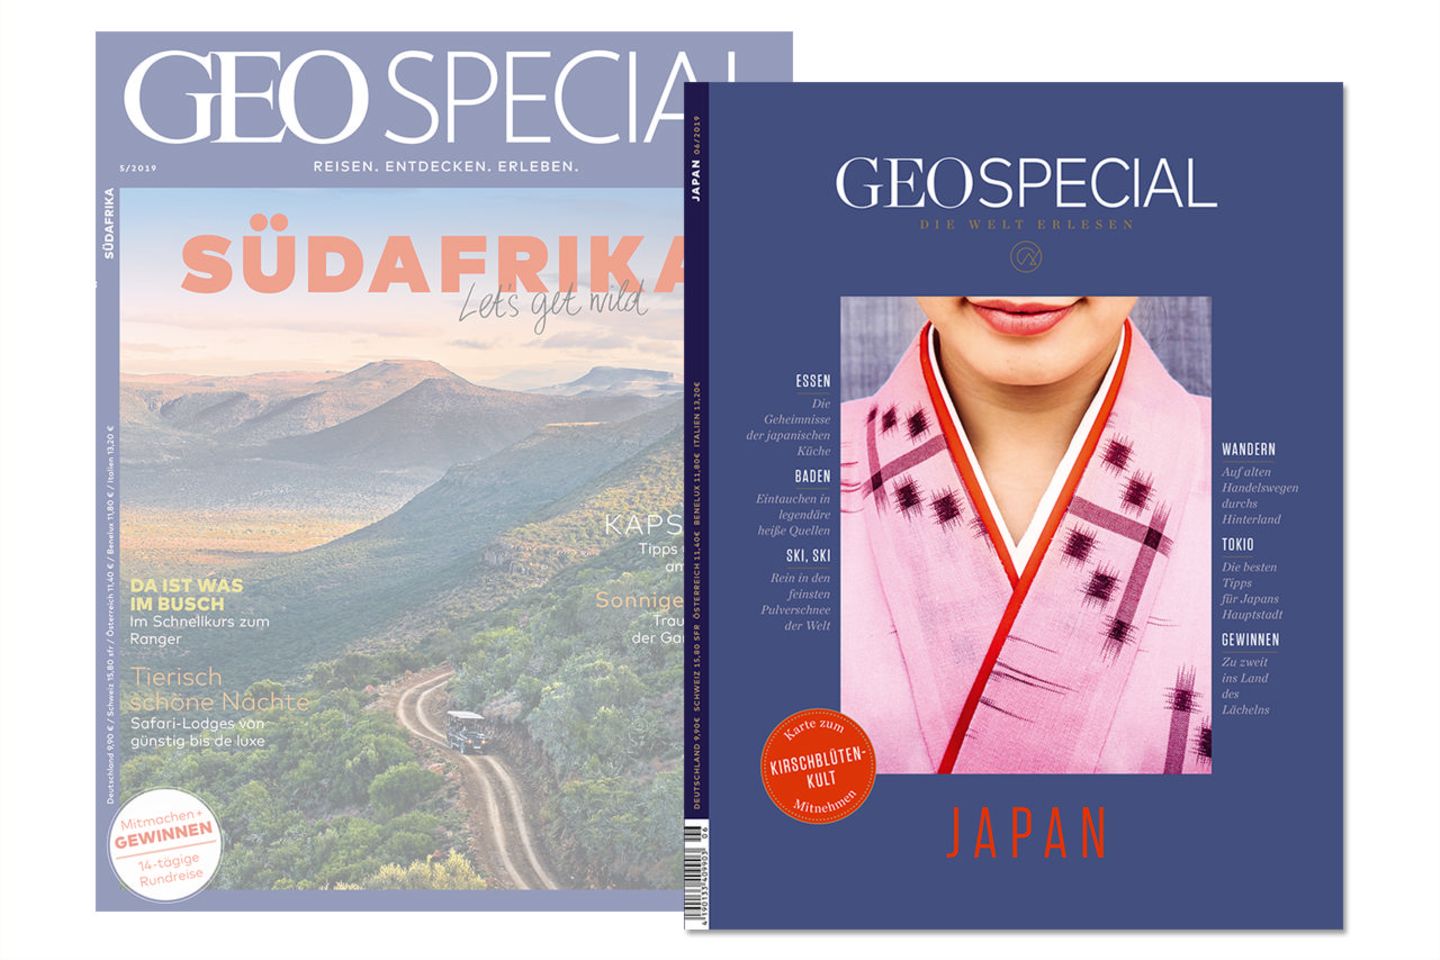 Zeit für Veränderung: Nicht nur das Cover von GEO SPECIAL hat sich deutlich verändert